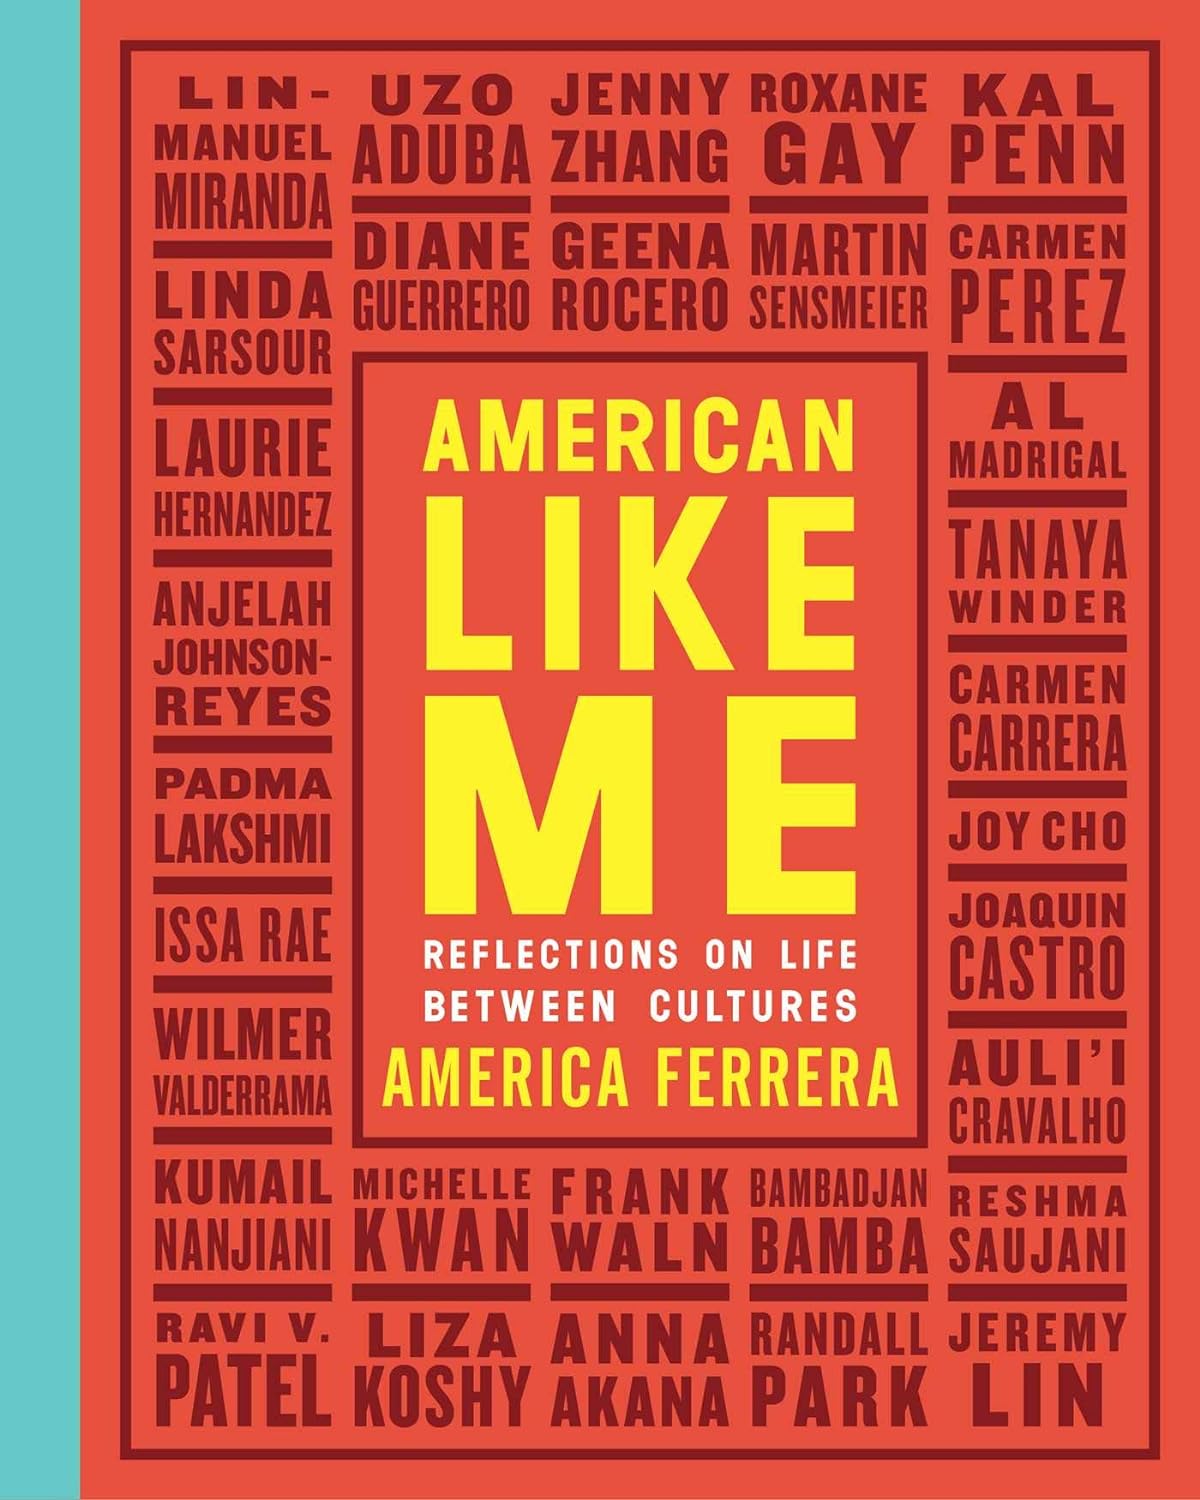 America Ferrera: American Like Me (2018, Simon & Schuster, Limited)